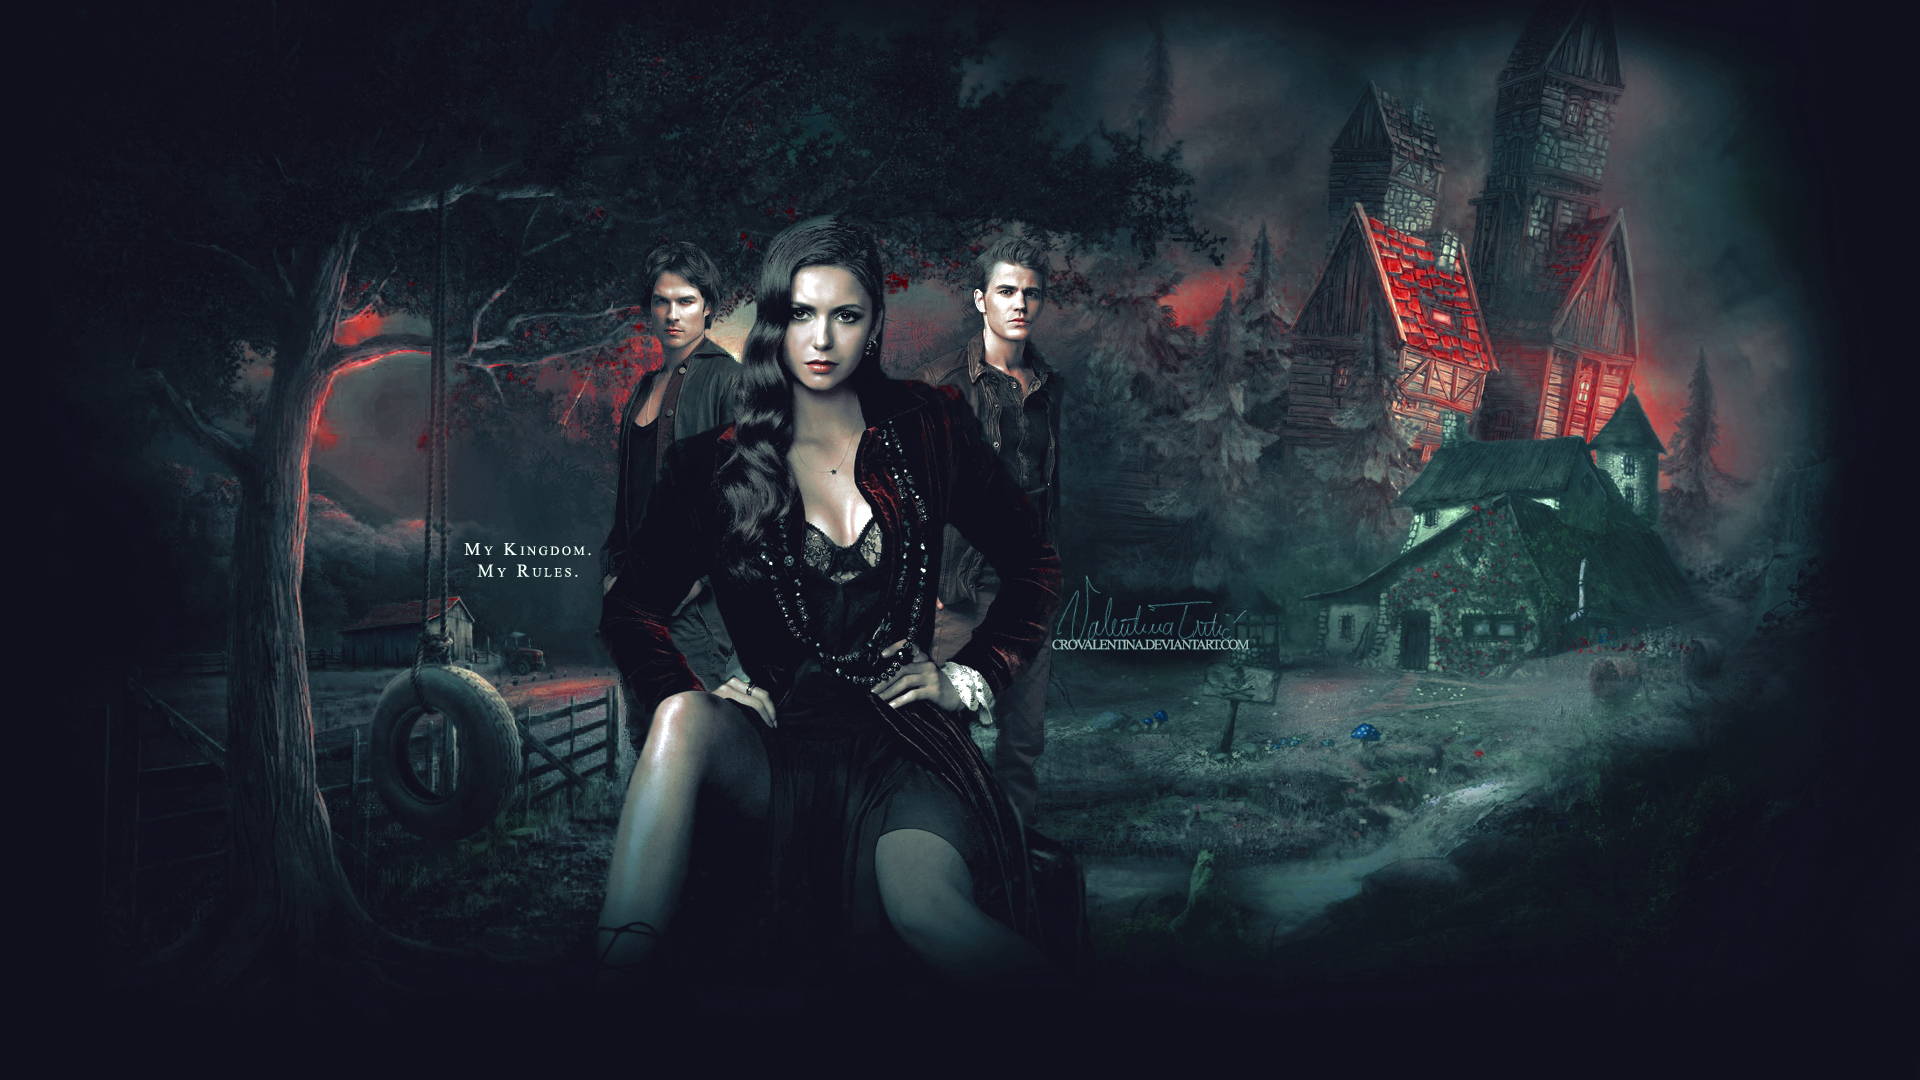 The Vampire Diaries Season 6 Wallpaper - wallpaper.